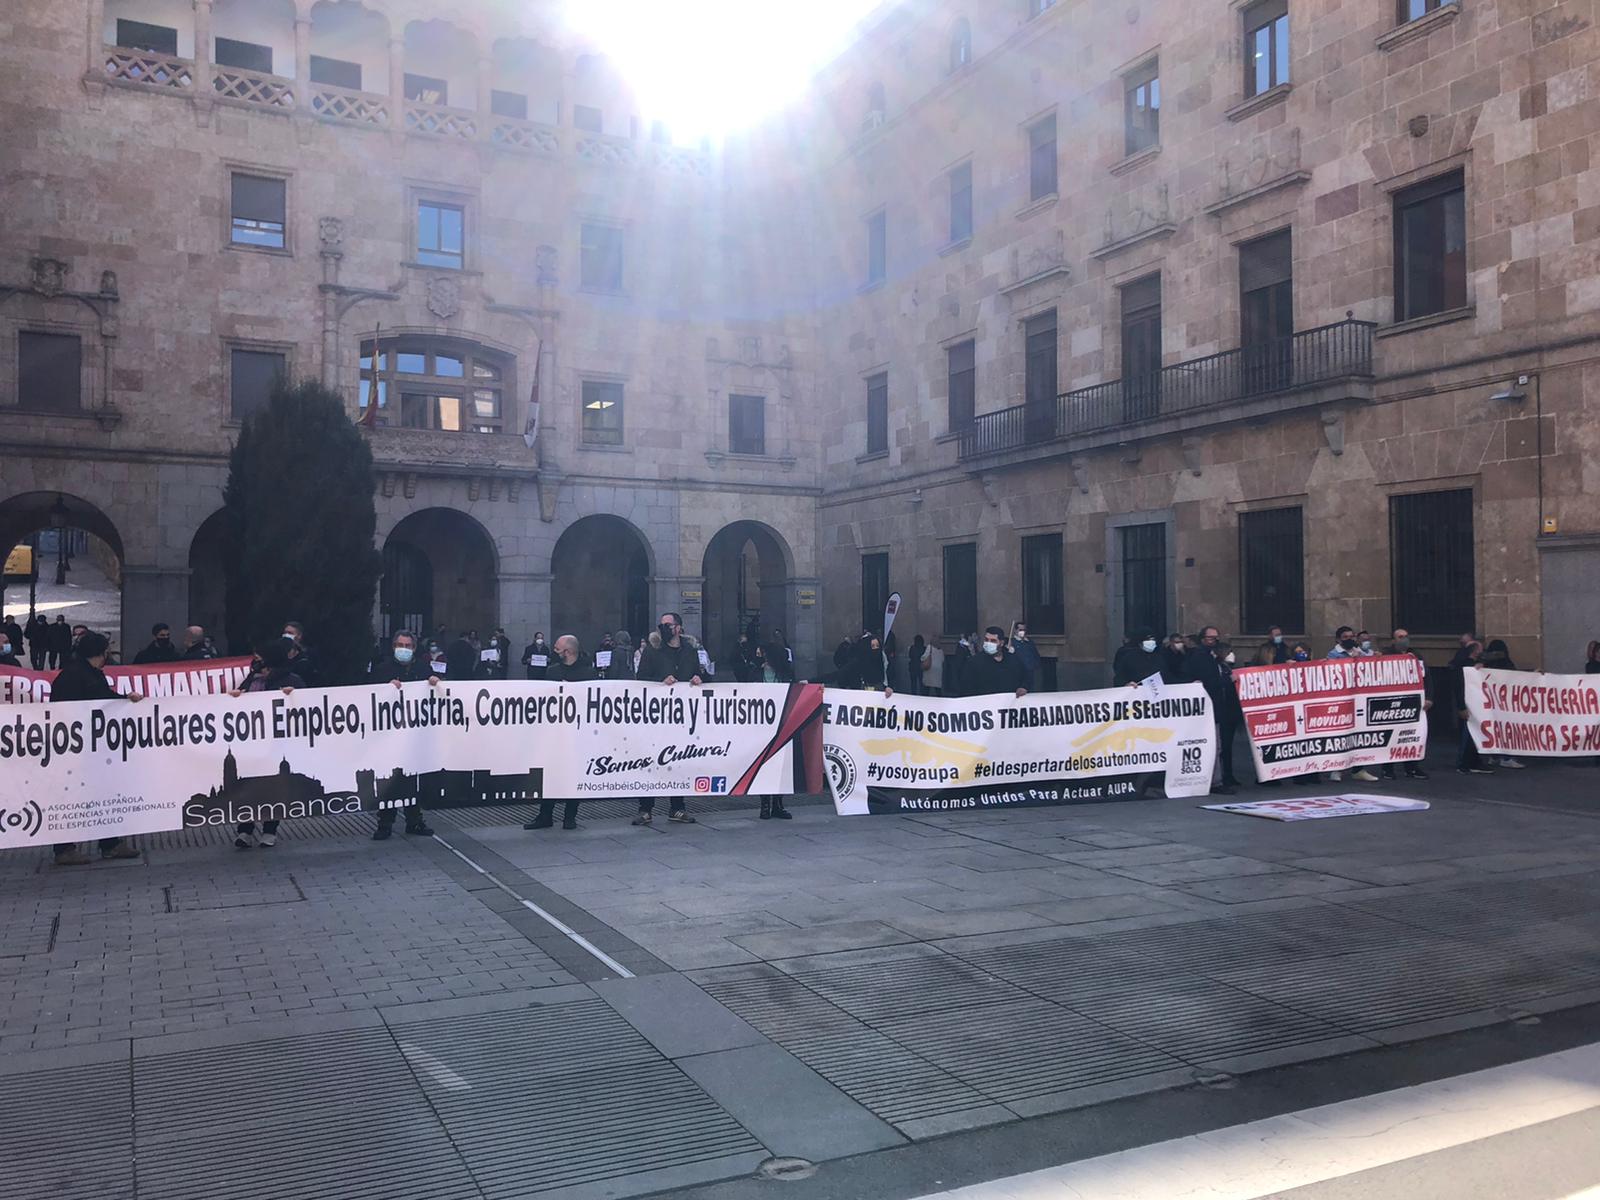 Manifestación de autónomos en Salamanca (2)